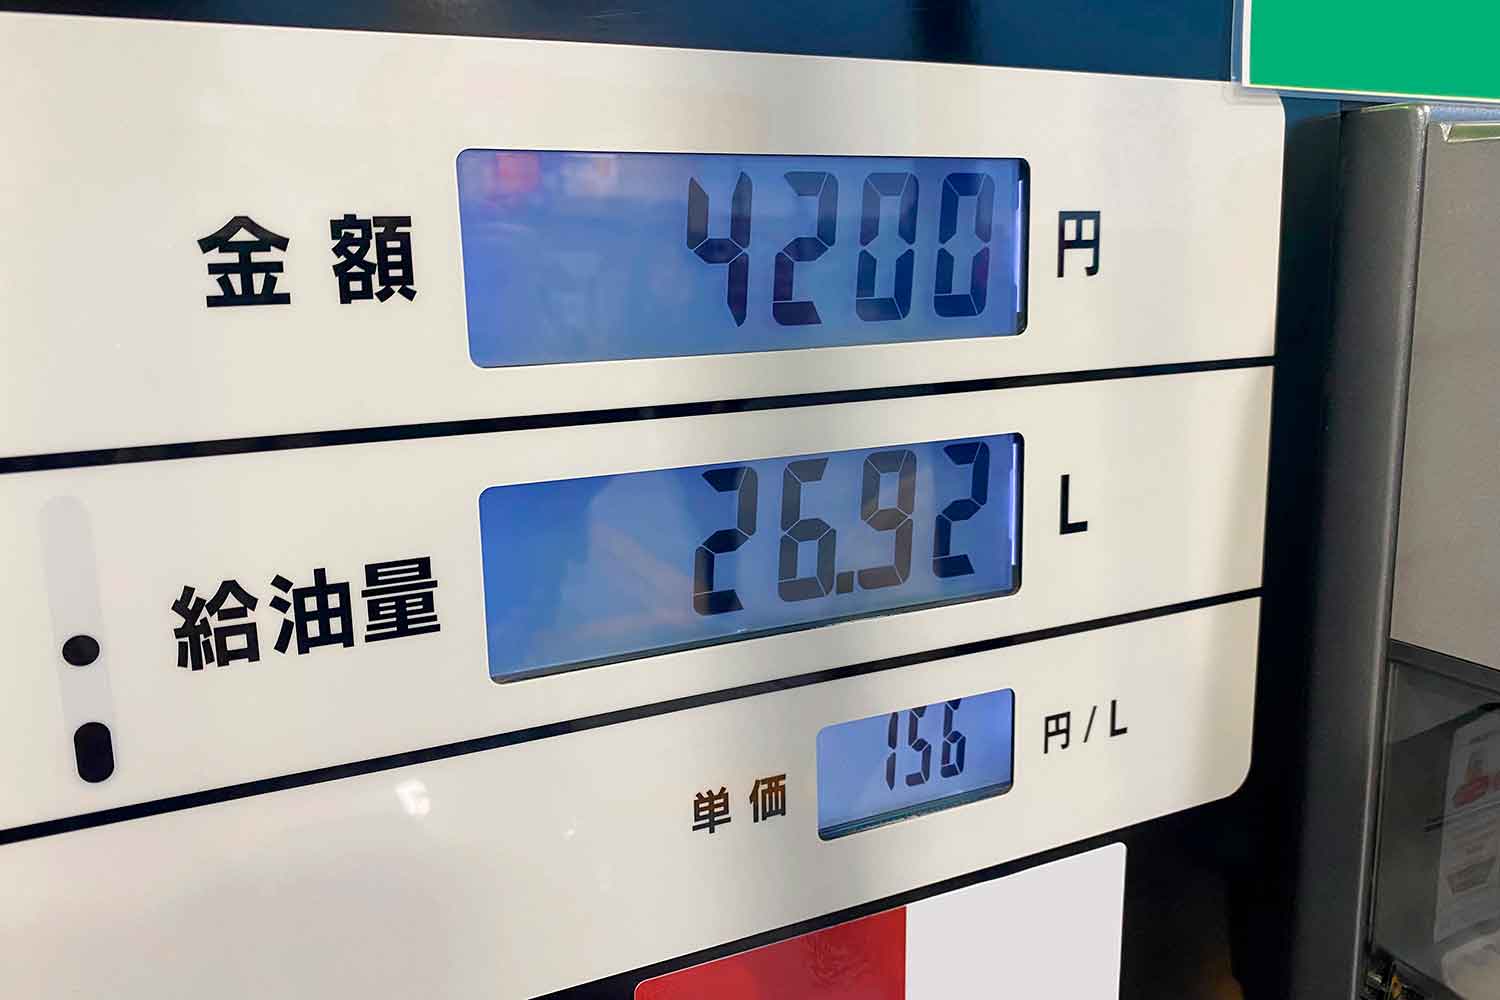 ガソリンスタンドの給油量と値段の表示板 〜 画像1